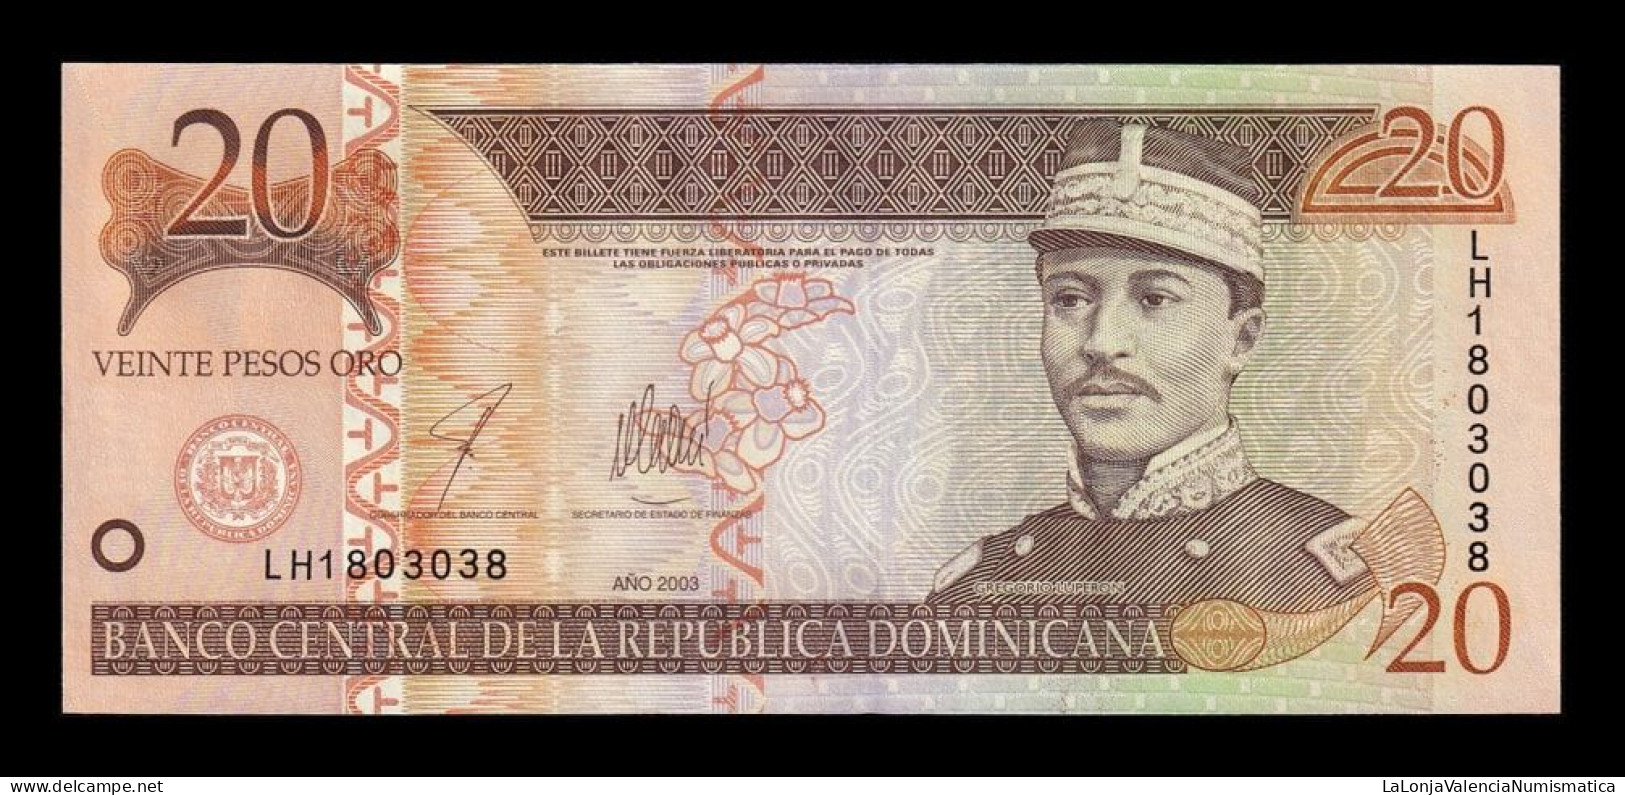 República Dominicana 20 Pesos Oro 2003 Pick 169c Sc Unc - República Dominicana